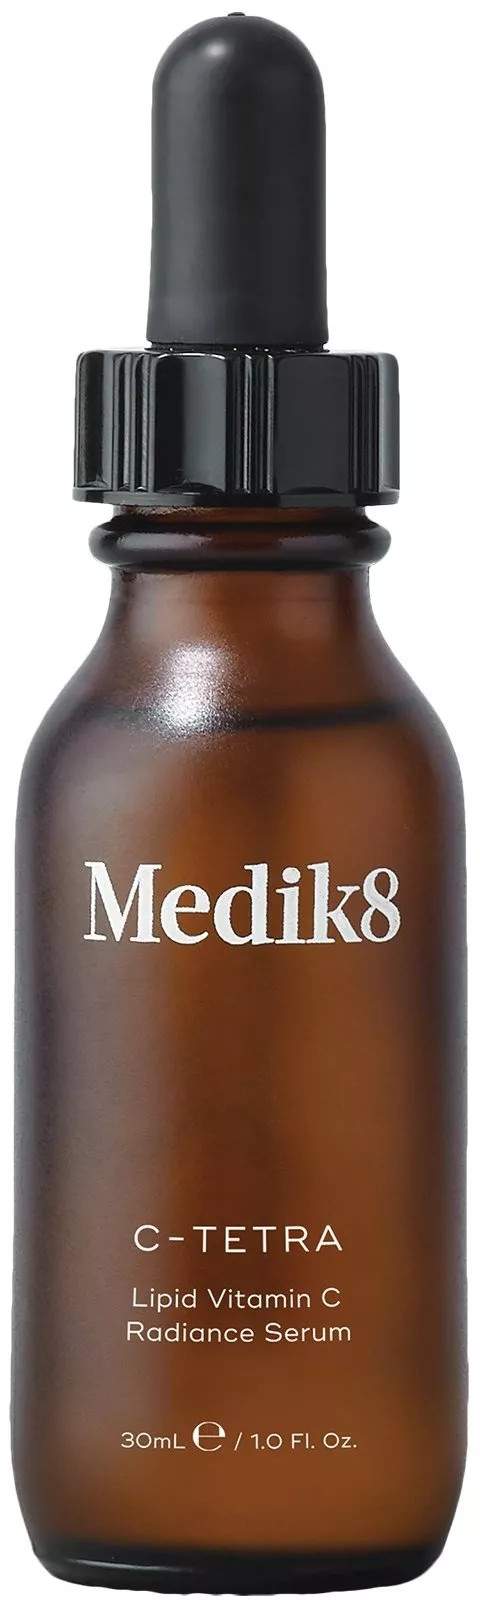 Medik8 Pleťové sérum s vitamínem C C-Tetra (Radiance Serum) 30 ml